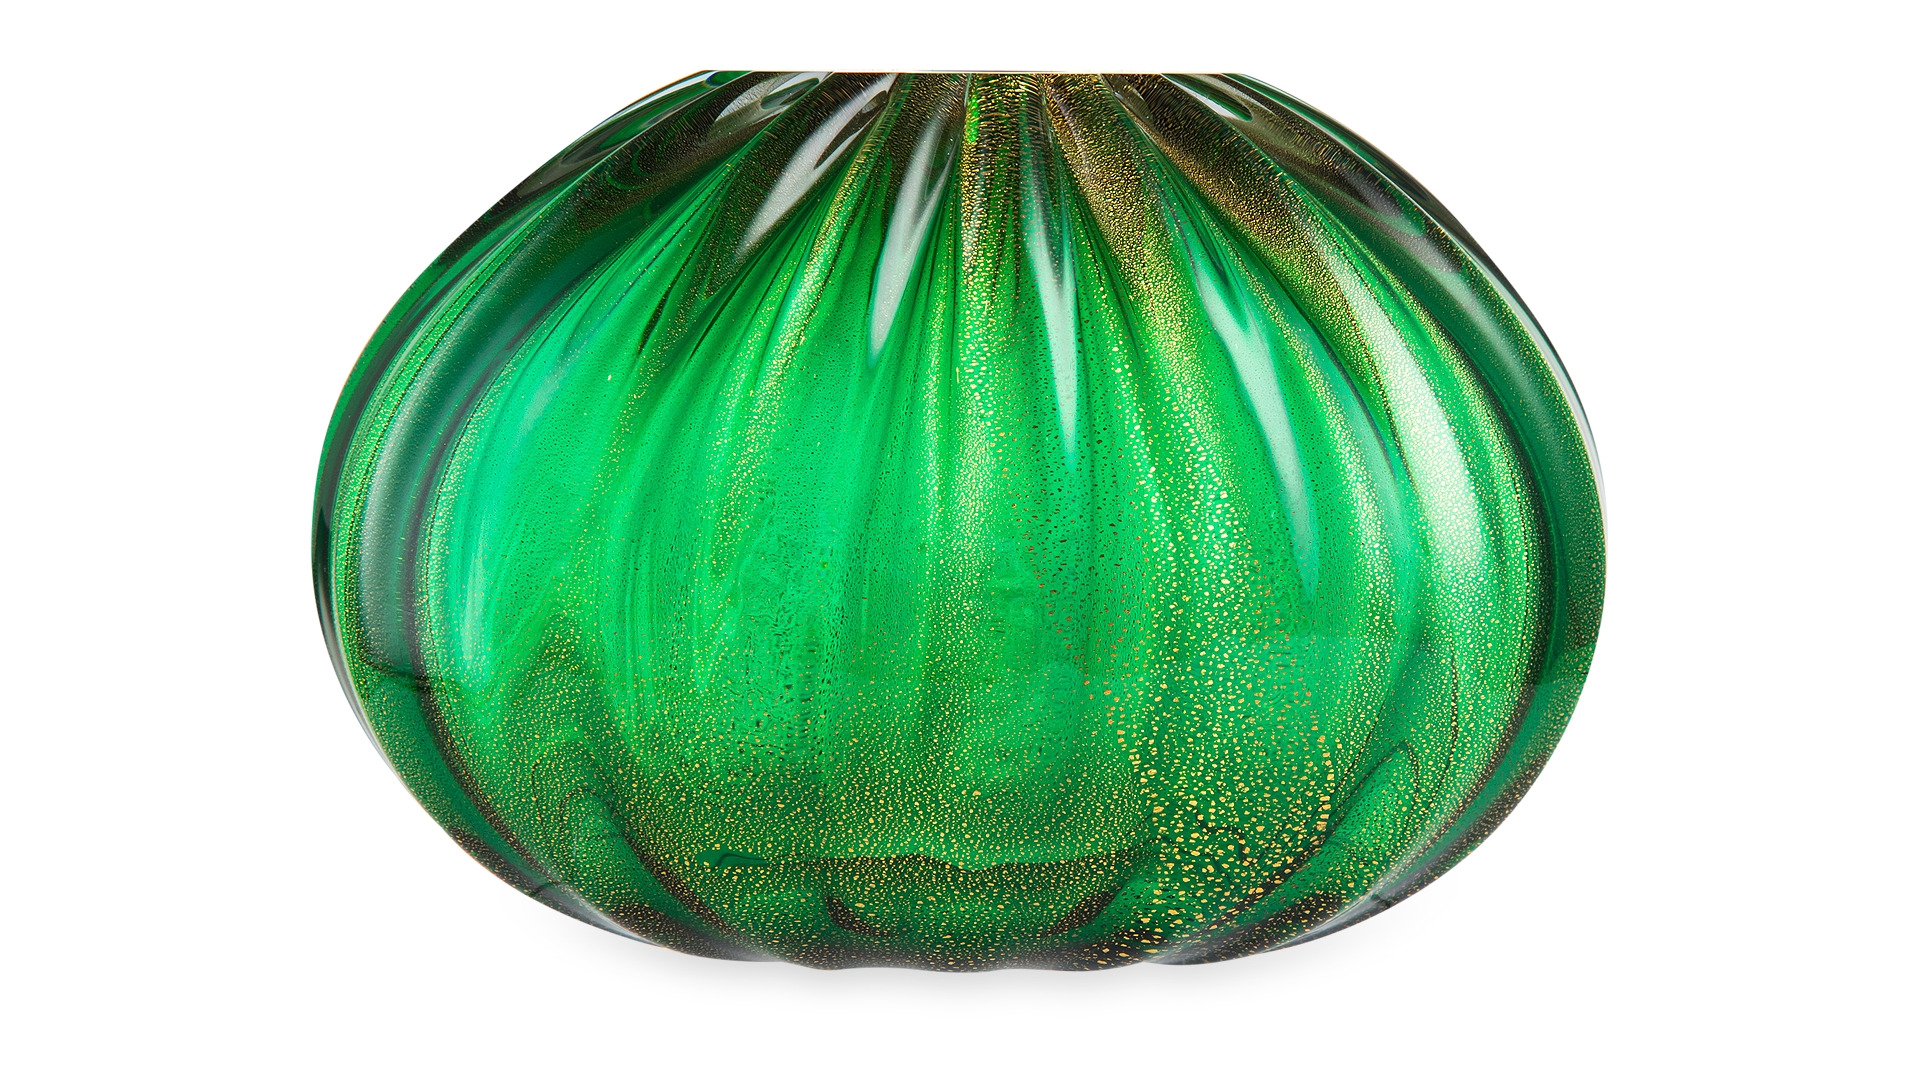 Подарочный набор Risalto ваза Зеленое золото, рефилл Lavanda Agrumata Цитрусовая лаванда 500 мл